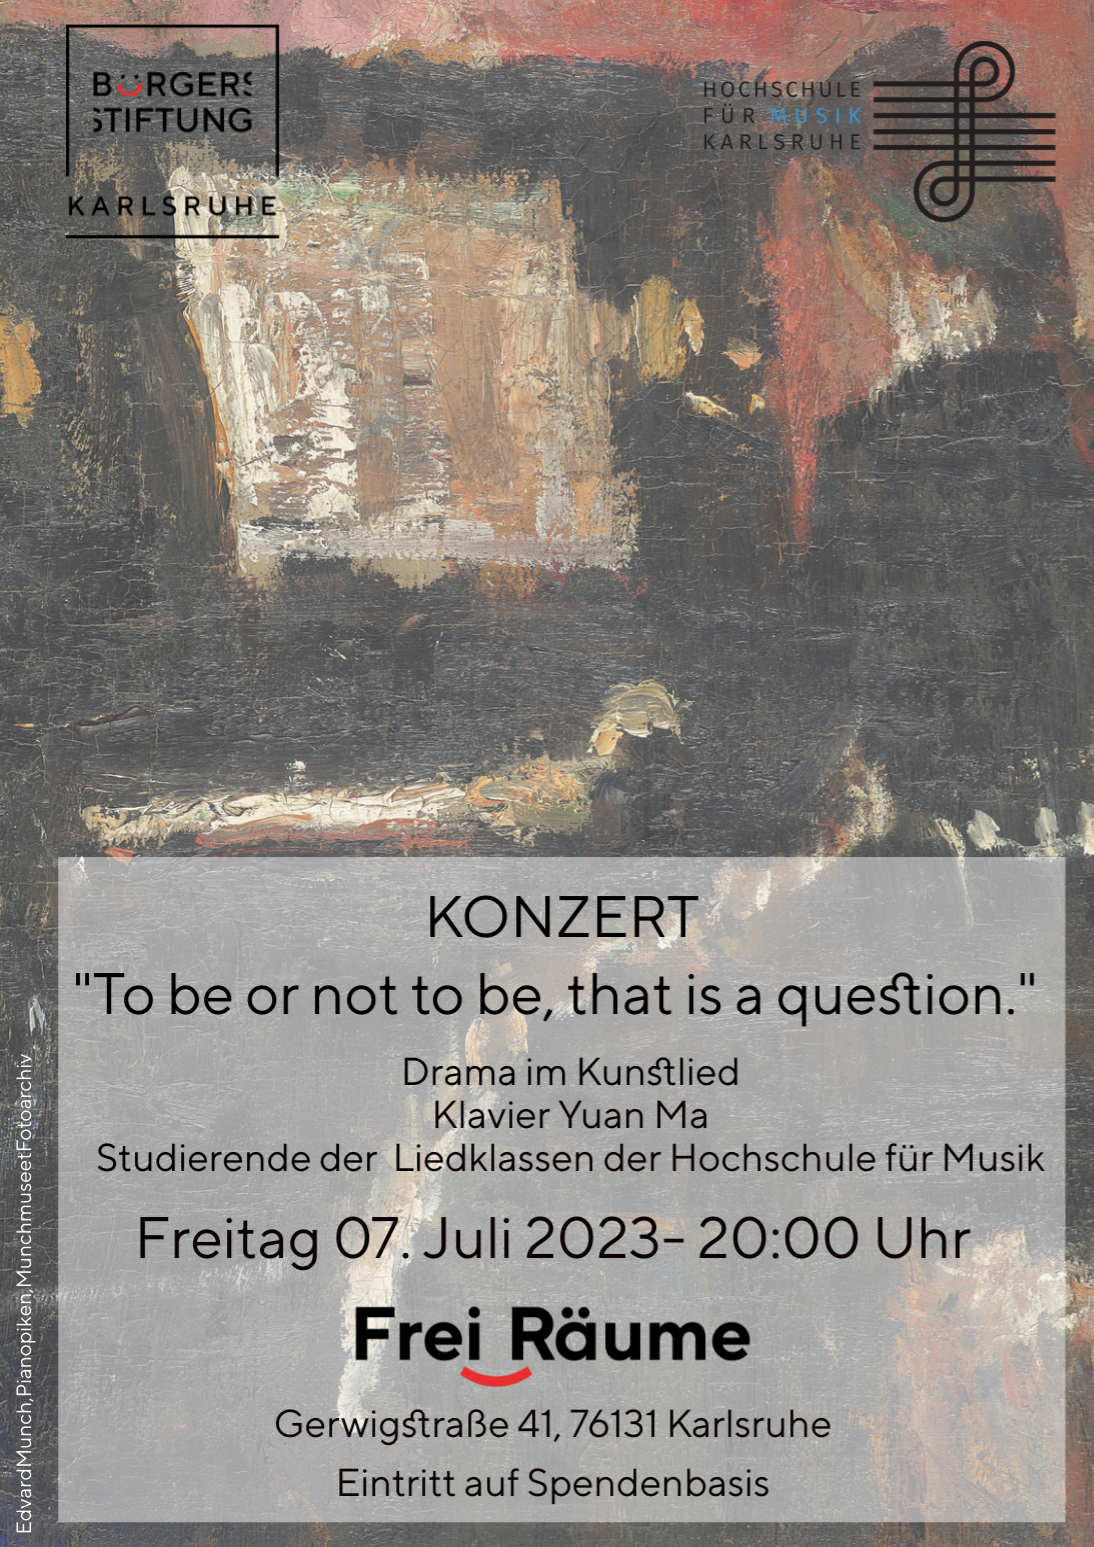 Plakat für das Pianokonzert mit dem Thema "Drama im Kunstlied" am 7 Juli 2023 im leih.lokal